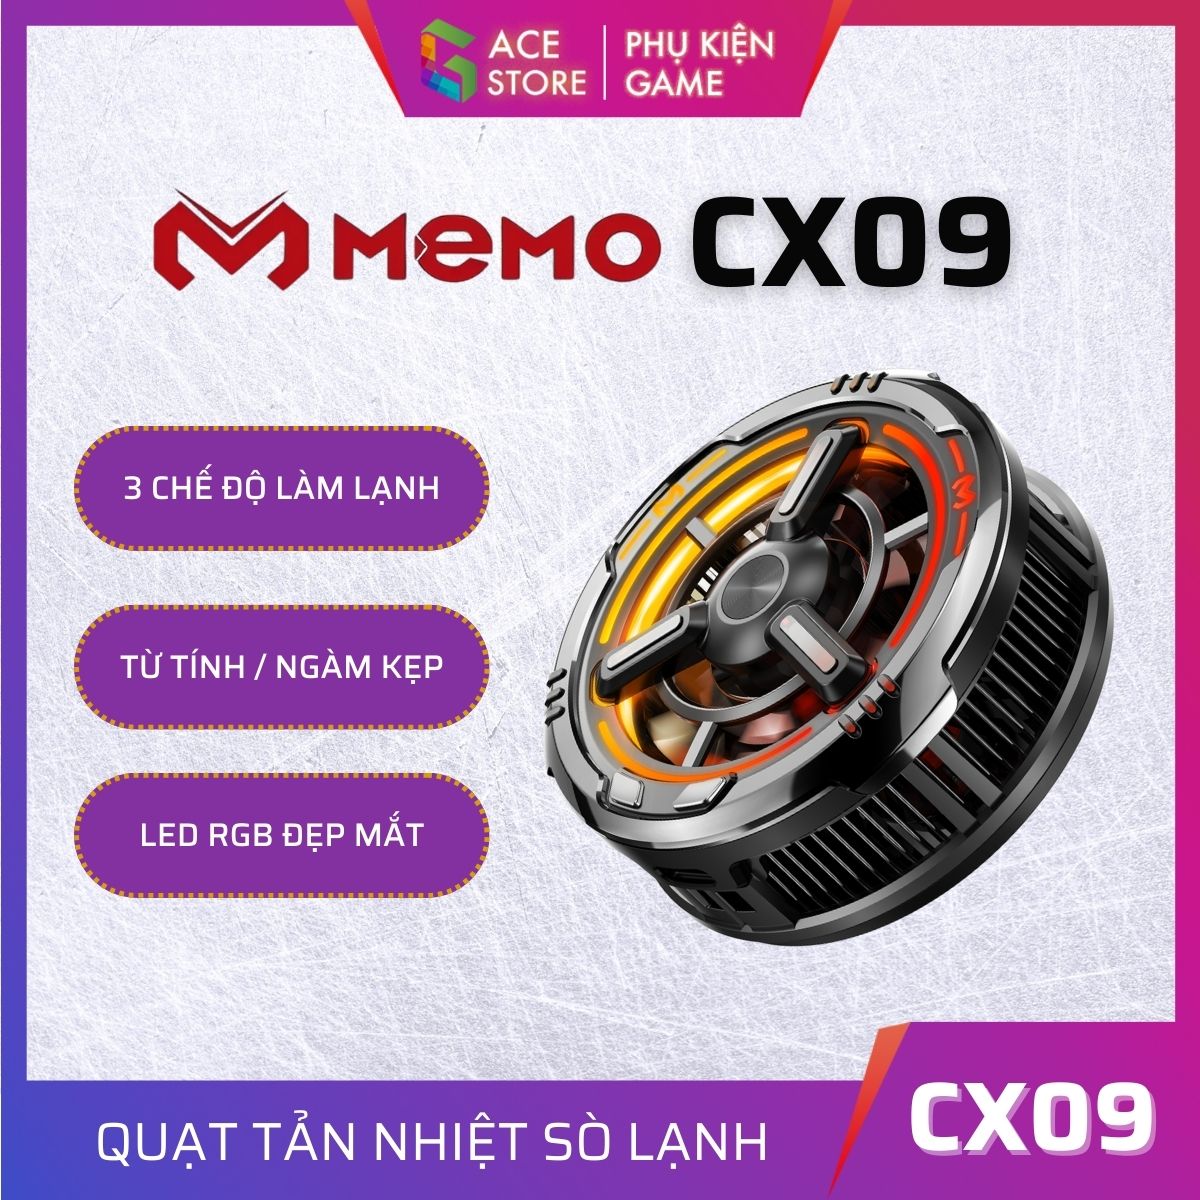 MEMO CX09 | Quạt tản nhiệt điện thoại 3 chế độ làm lạnh LED RGB dành cho điện thoại và máy tính bảng